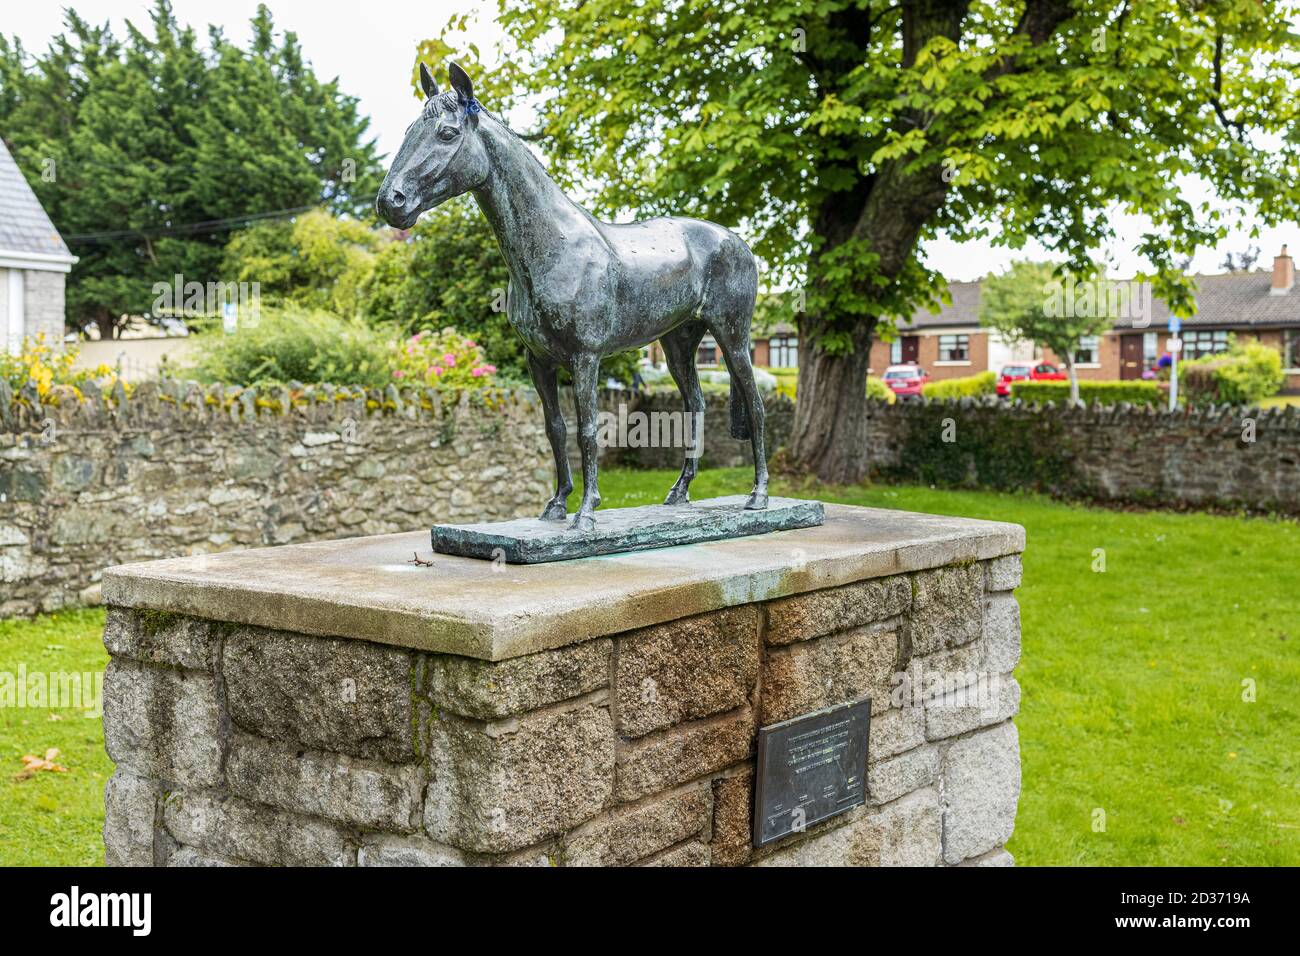 Estatuillas conmemorativas de bronce de caballos en el parque de Sant Brigids, Kill. Celebrando el éxito del padre e hijo Ted y Ruby Walsh ganando el G irlandés Foto de stock